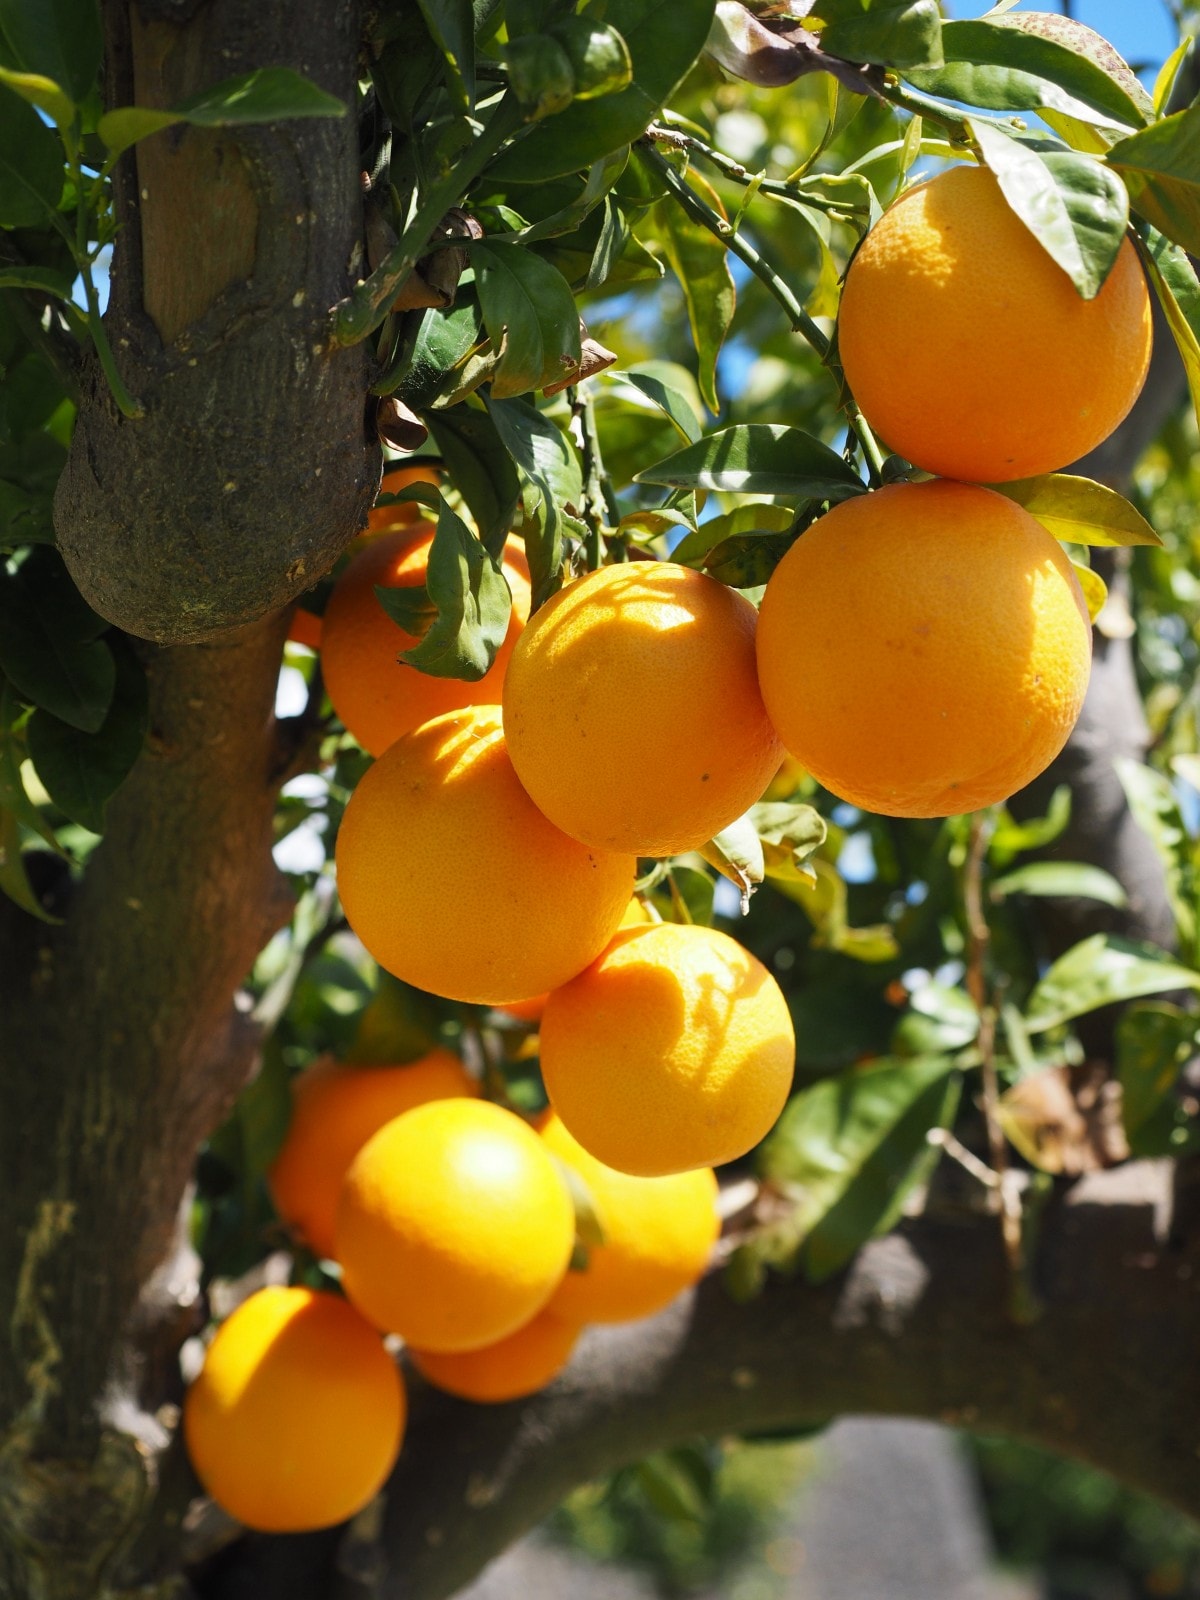 1 kg cam Mỹ hiện nay giá bao nhiêu | Trái Cây Sạch Fuji Fruits